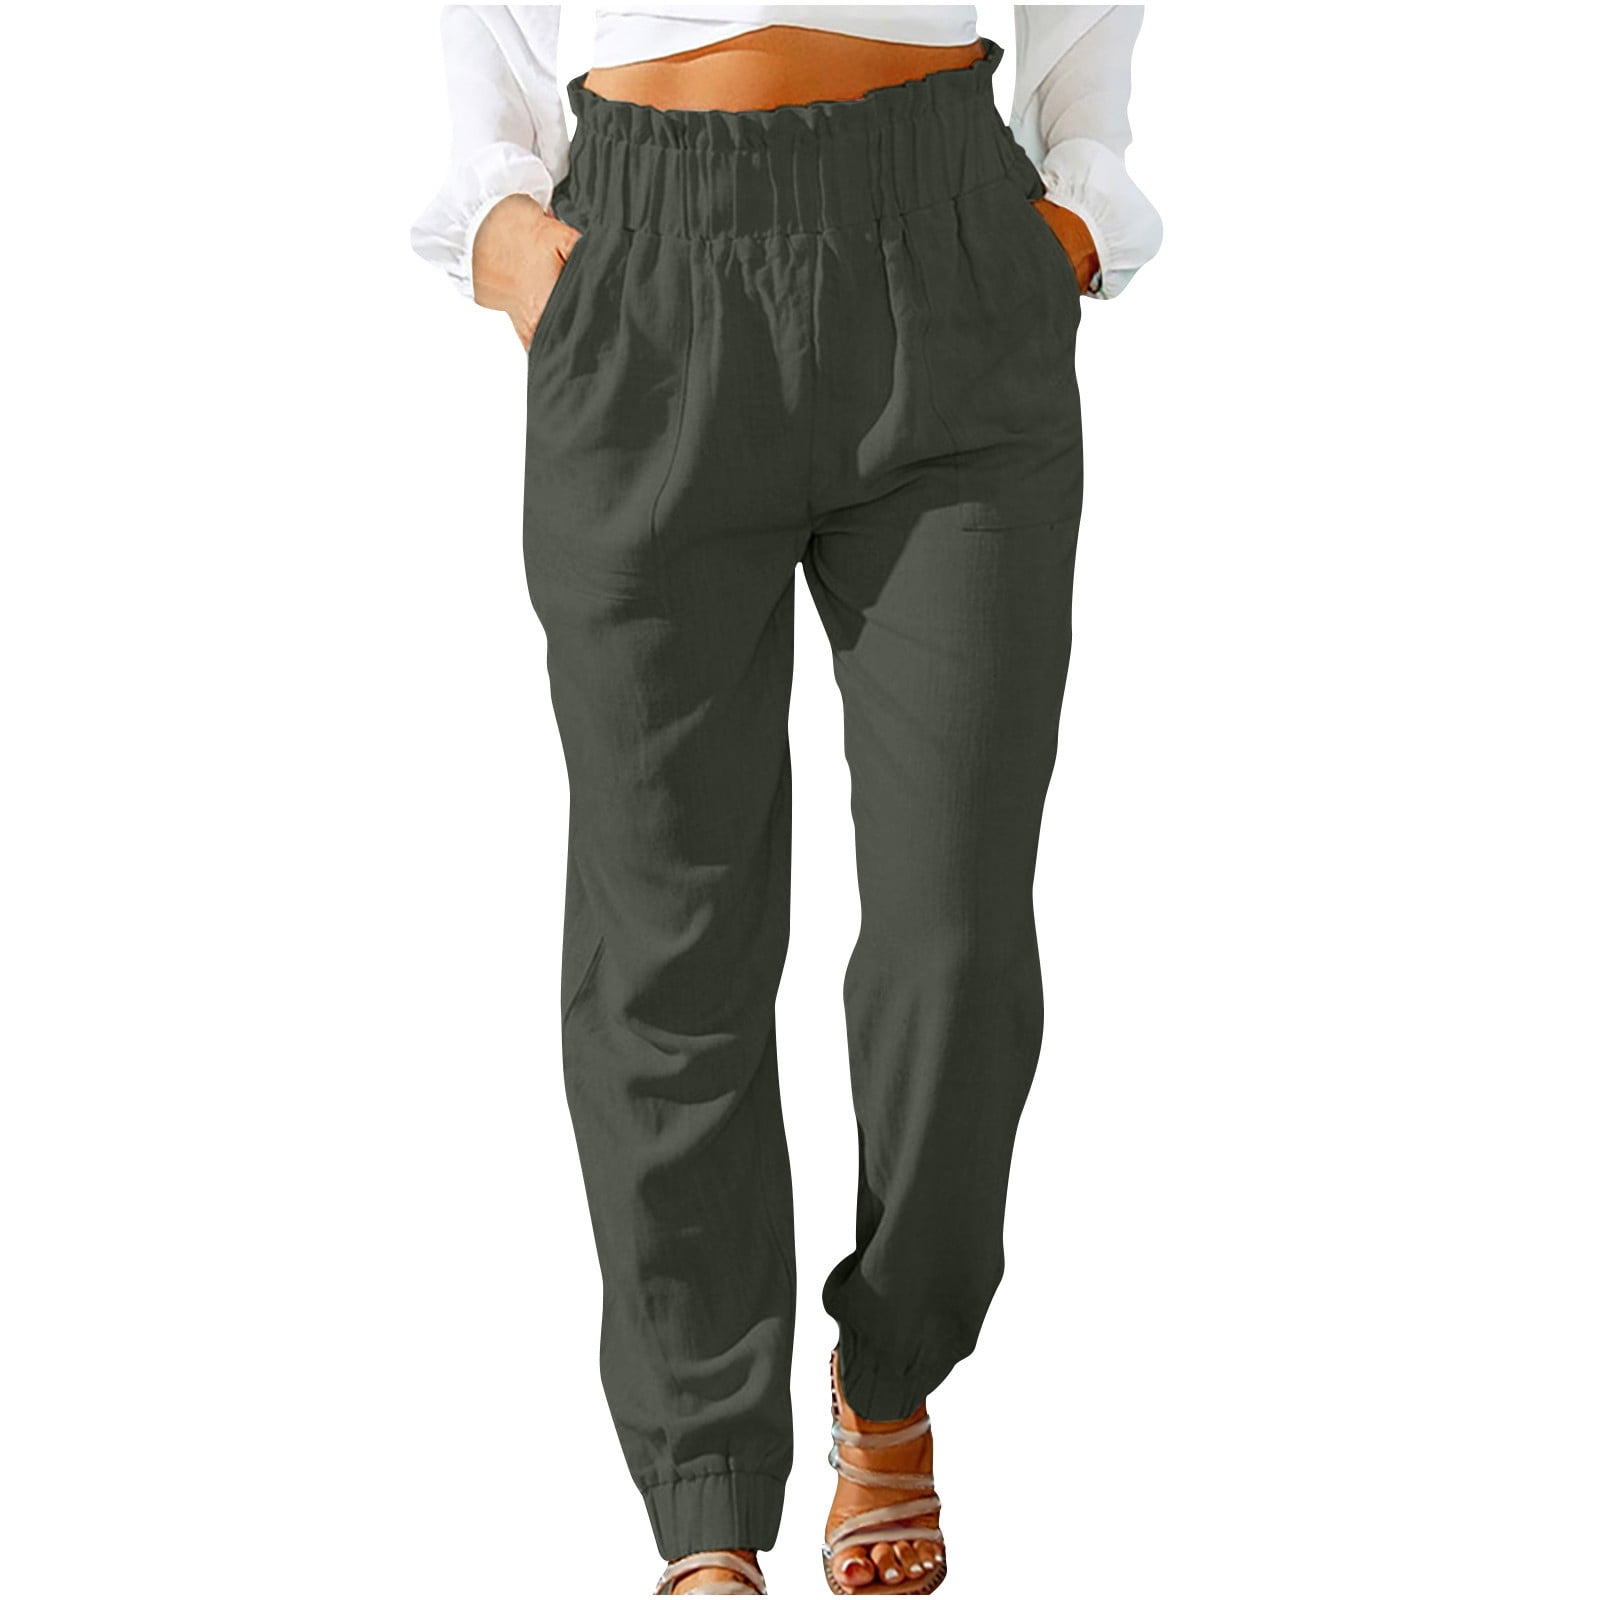 HTNBO Women Cotton Linen Lounge Pants Elastic Waist Hiking Solid Color ...